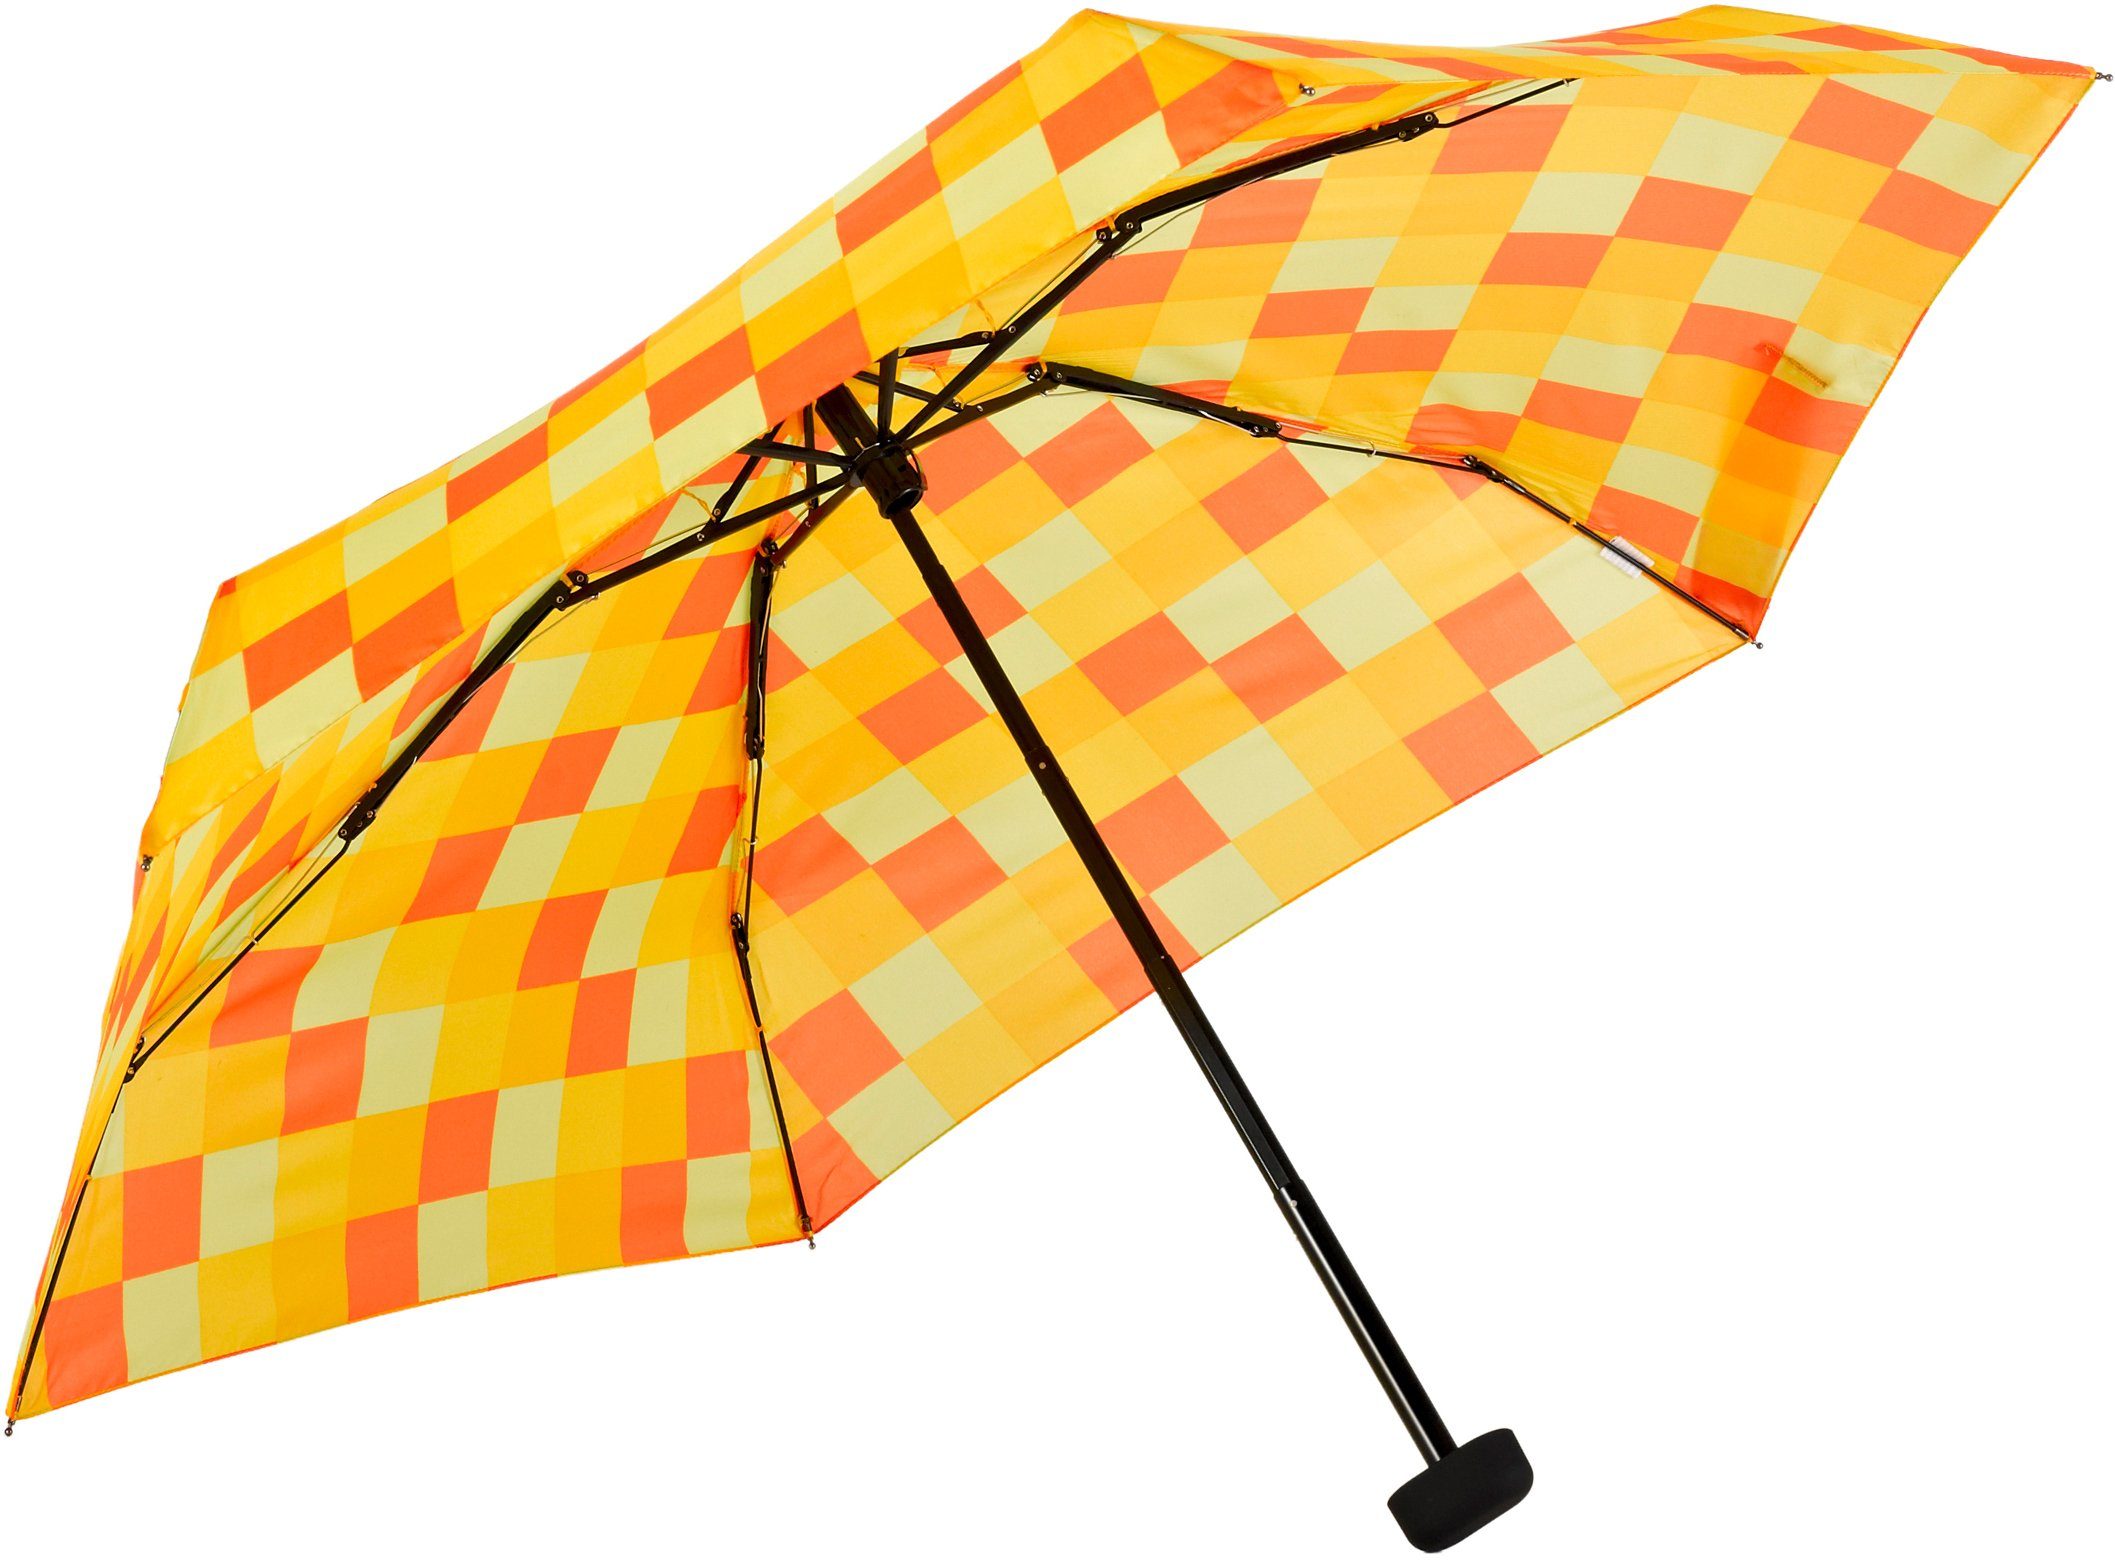 EuroSCHIRM® Taschenregenschirm Karo extra gelb Mini Karo flach und orange Regenschirm »Dainty« kurz, orange, EuroSCHIRM® gelb Dainty